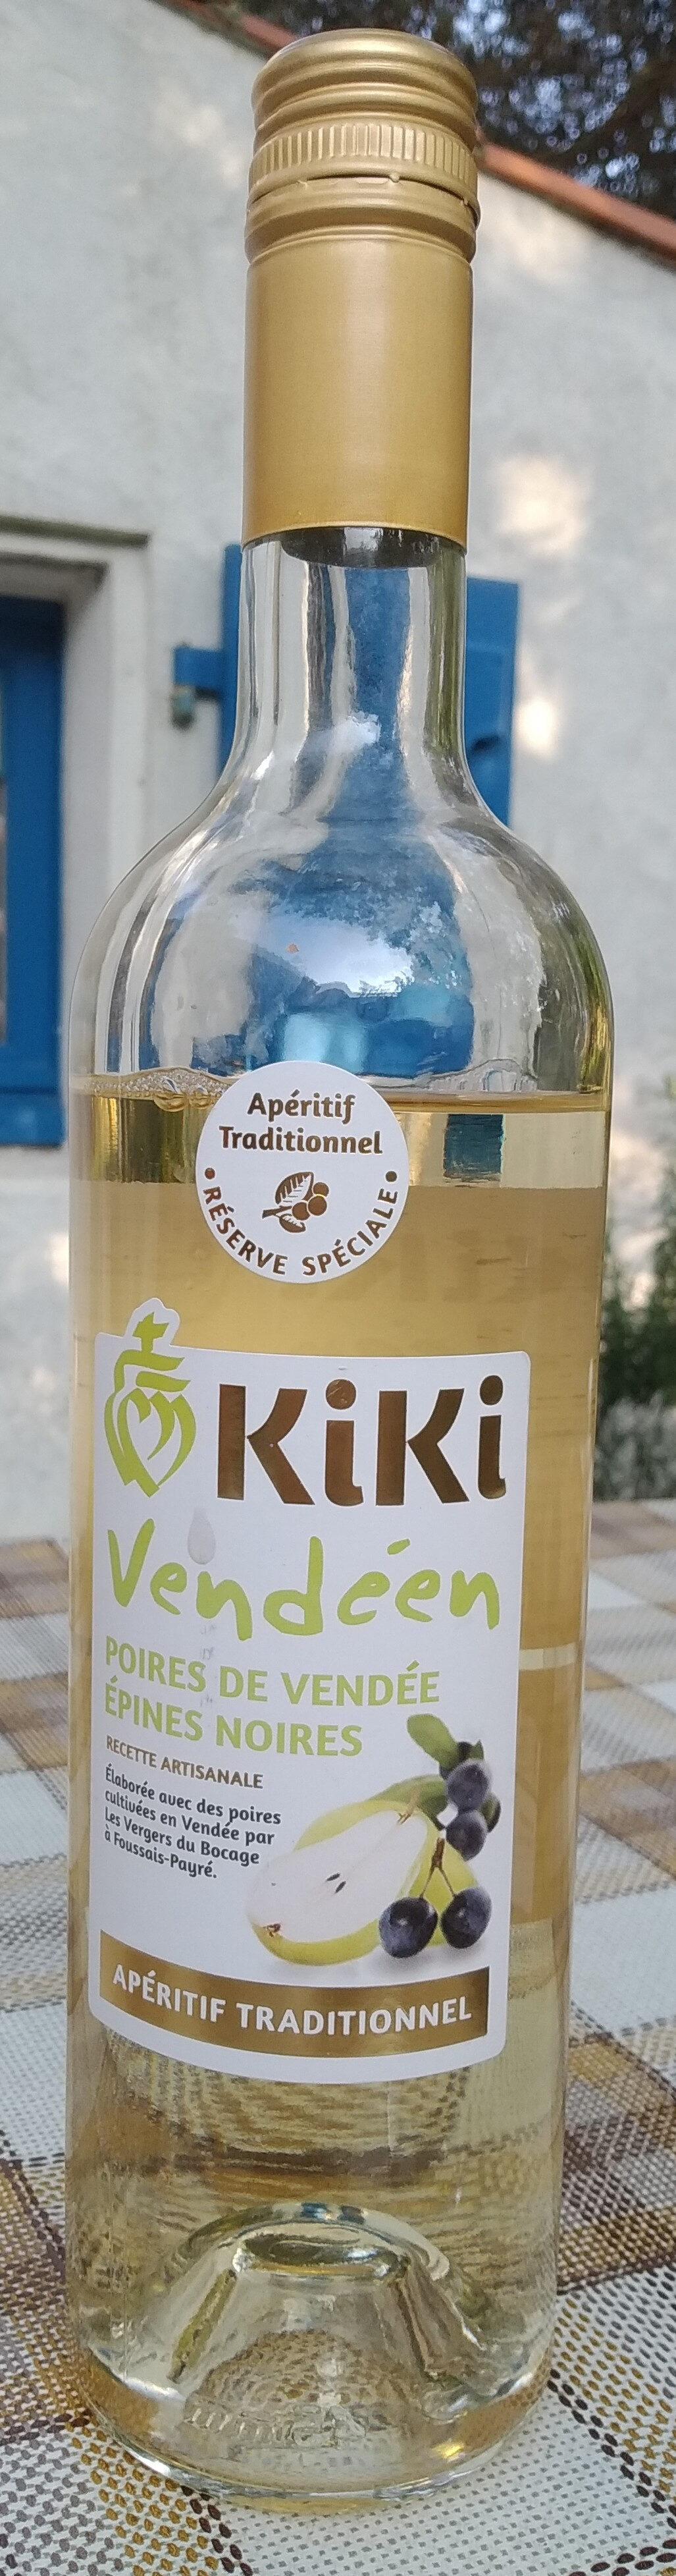 Kiki vendéen - poires de Vendée - Product - fr